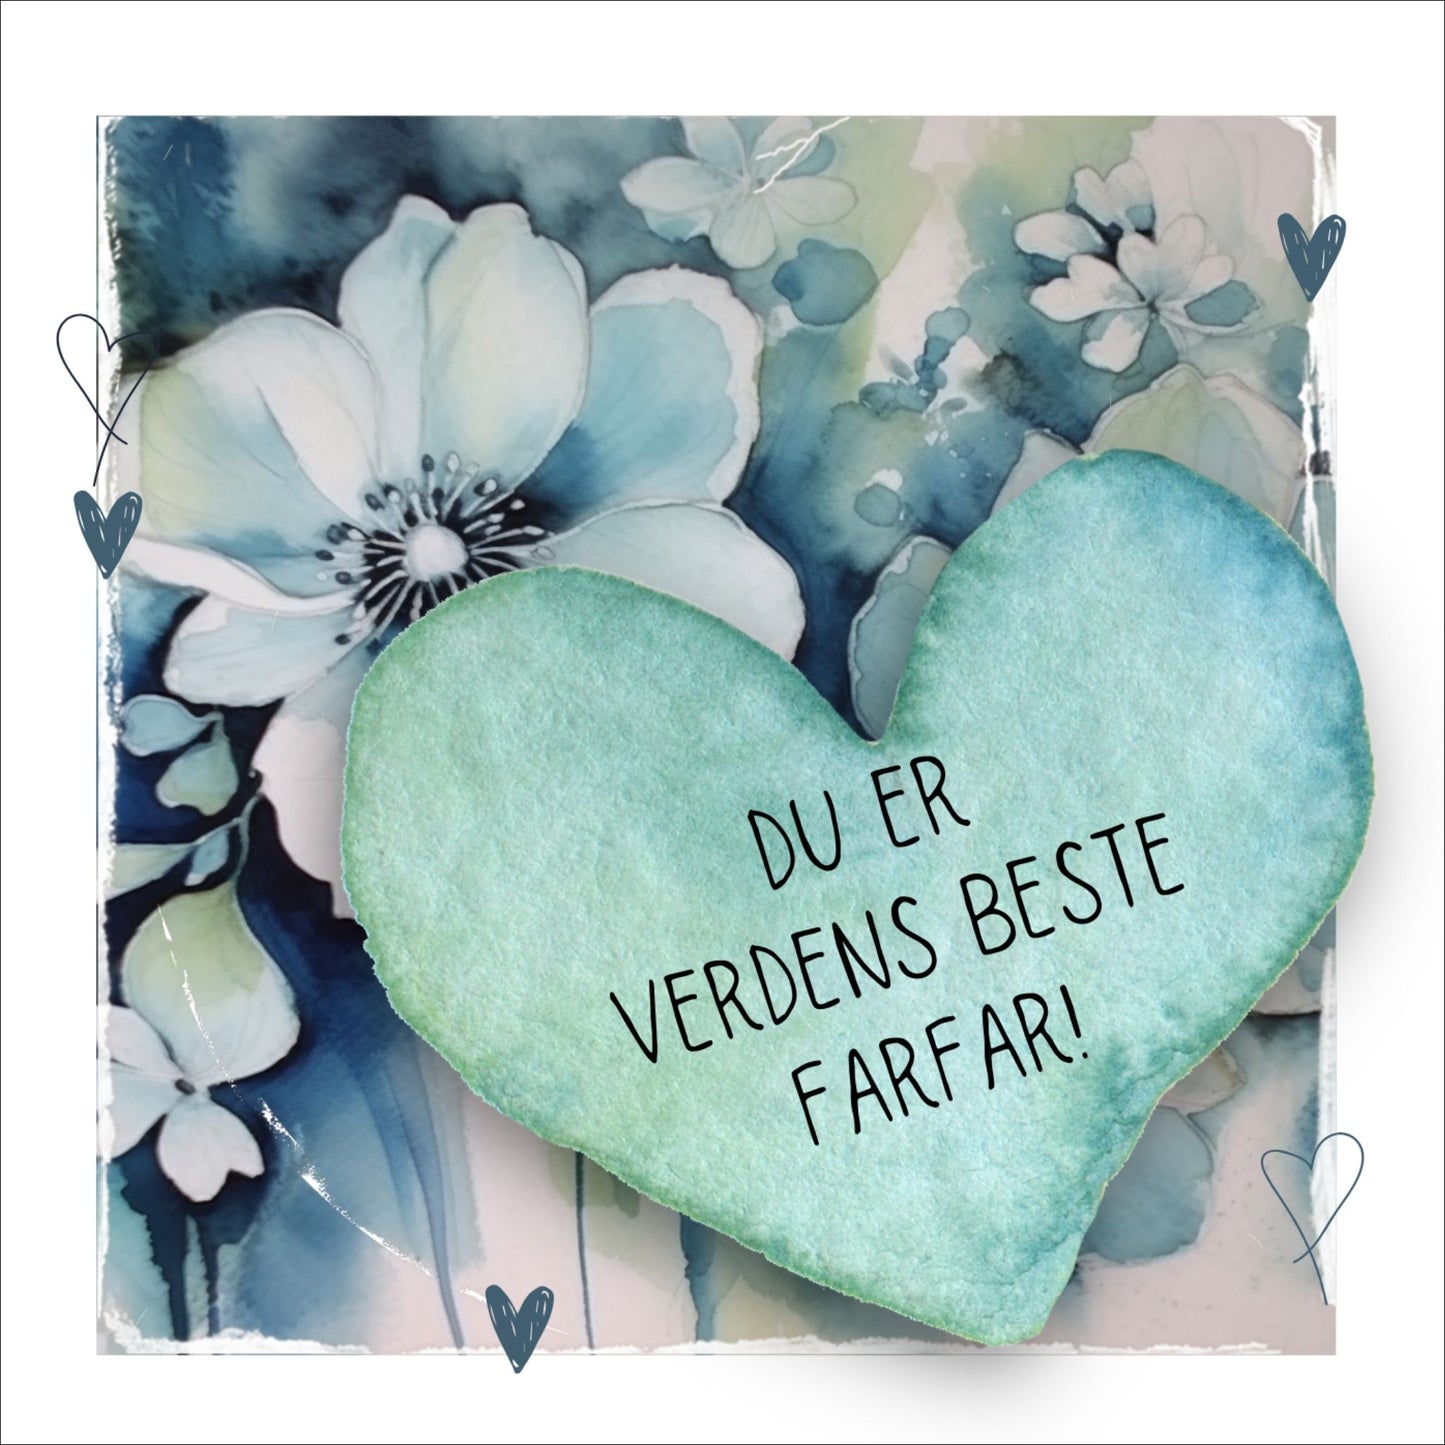 Grafisk plakat med et lyseblått hjerte påført tekst "Du er verdens beste farfar!". Bagrunn med blomster i blåtoner. Kortet har en hvit kant rundt på 1,5 cm.